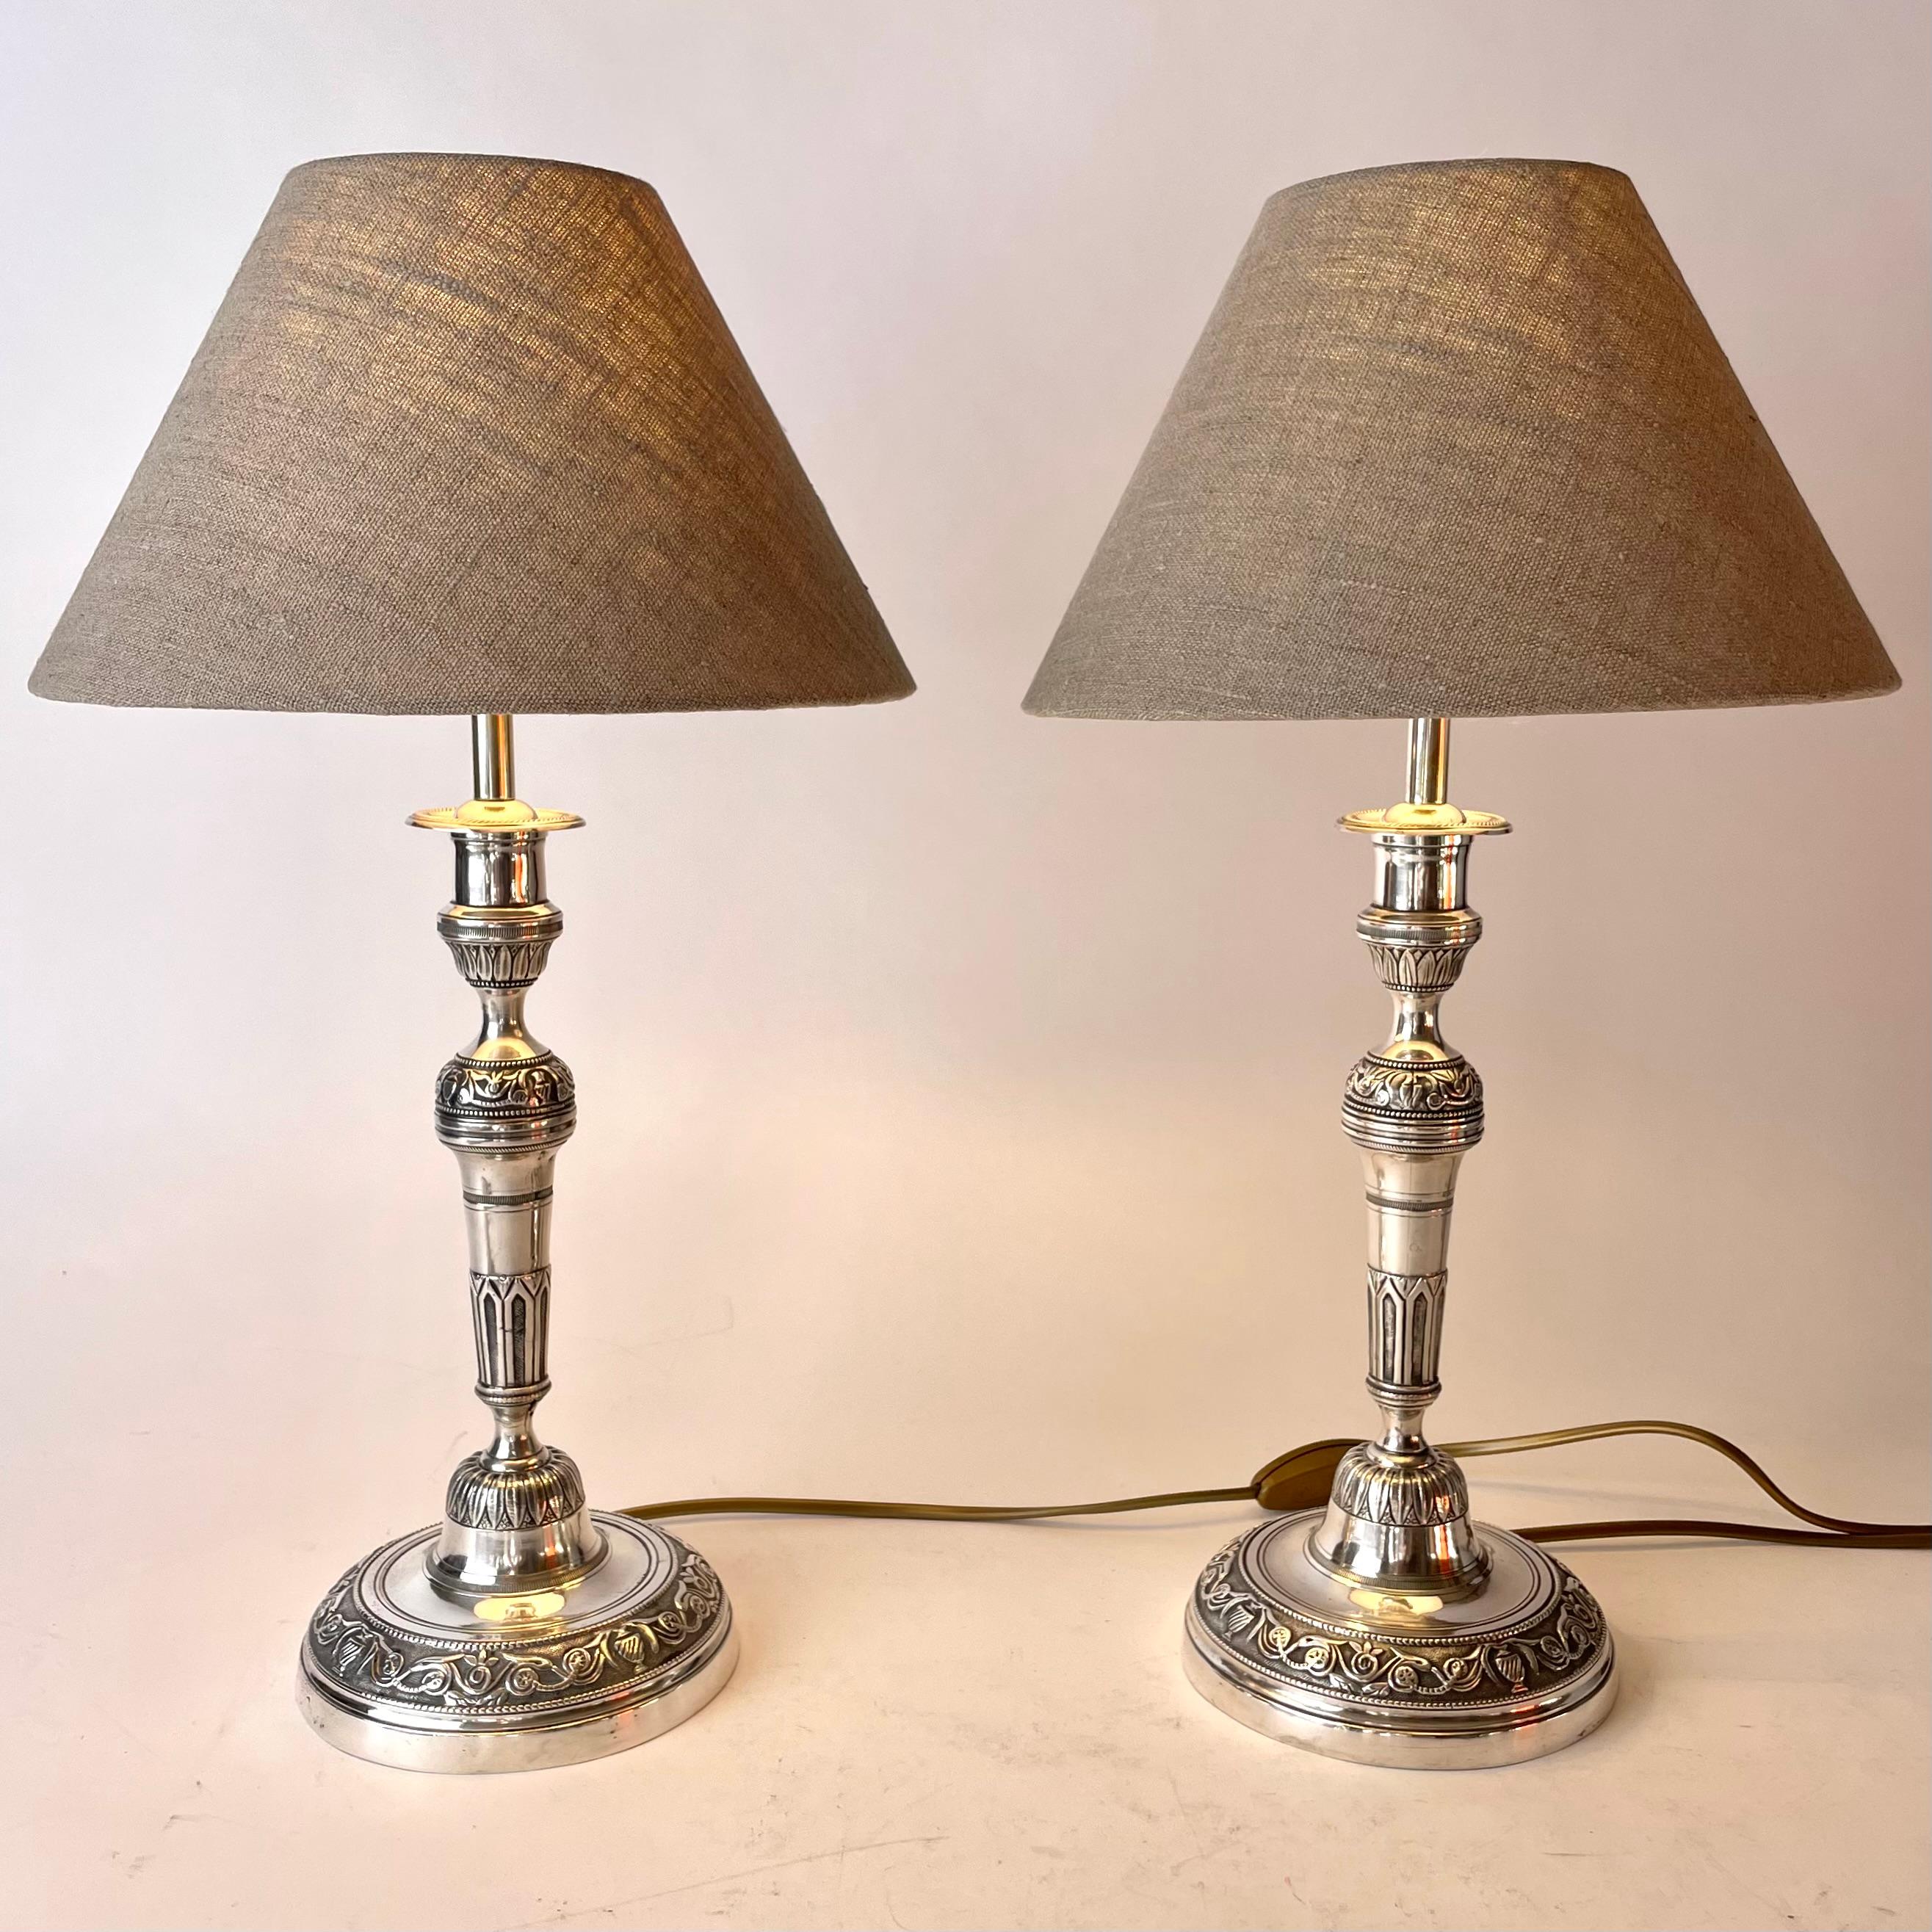 Elegantes Paar Empire-Tischlampen aus versilberter Bronze. Ursprünglich ein Paar Empire-Leuchter aus den 1820er Jahren, die Anfang des 20. Jahrhunderts zu Tischlampen umfunktioniert wurden.

Neu verkabelte Elektrizität 

Neue Lampenschirme aus